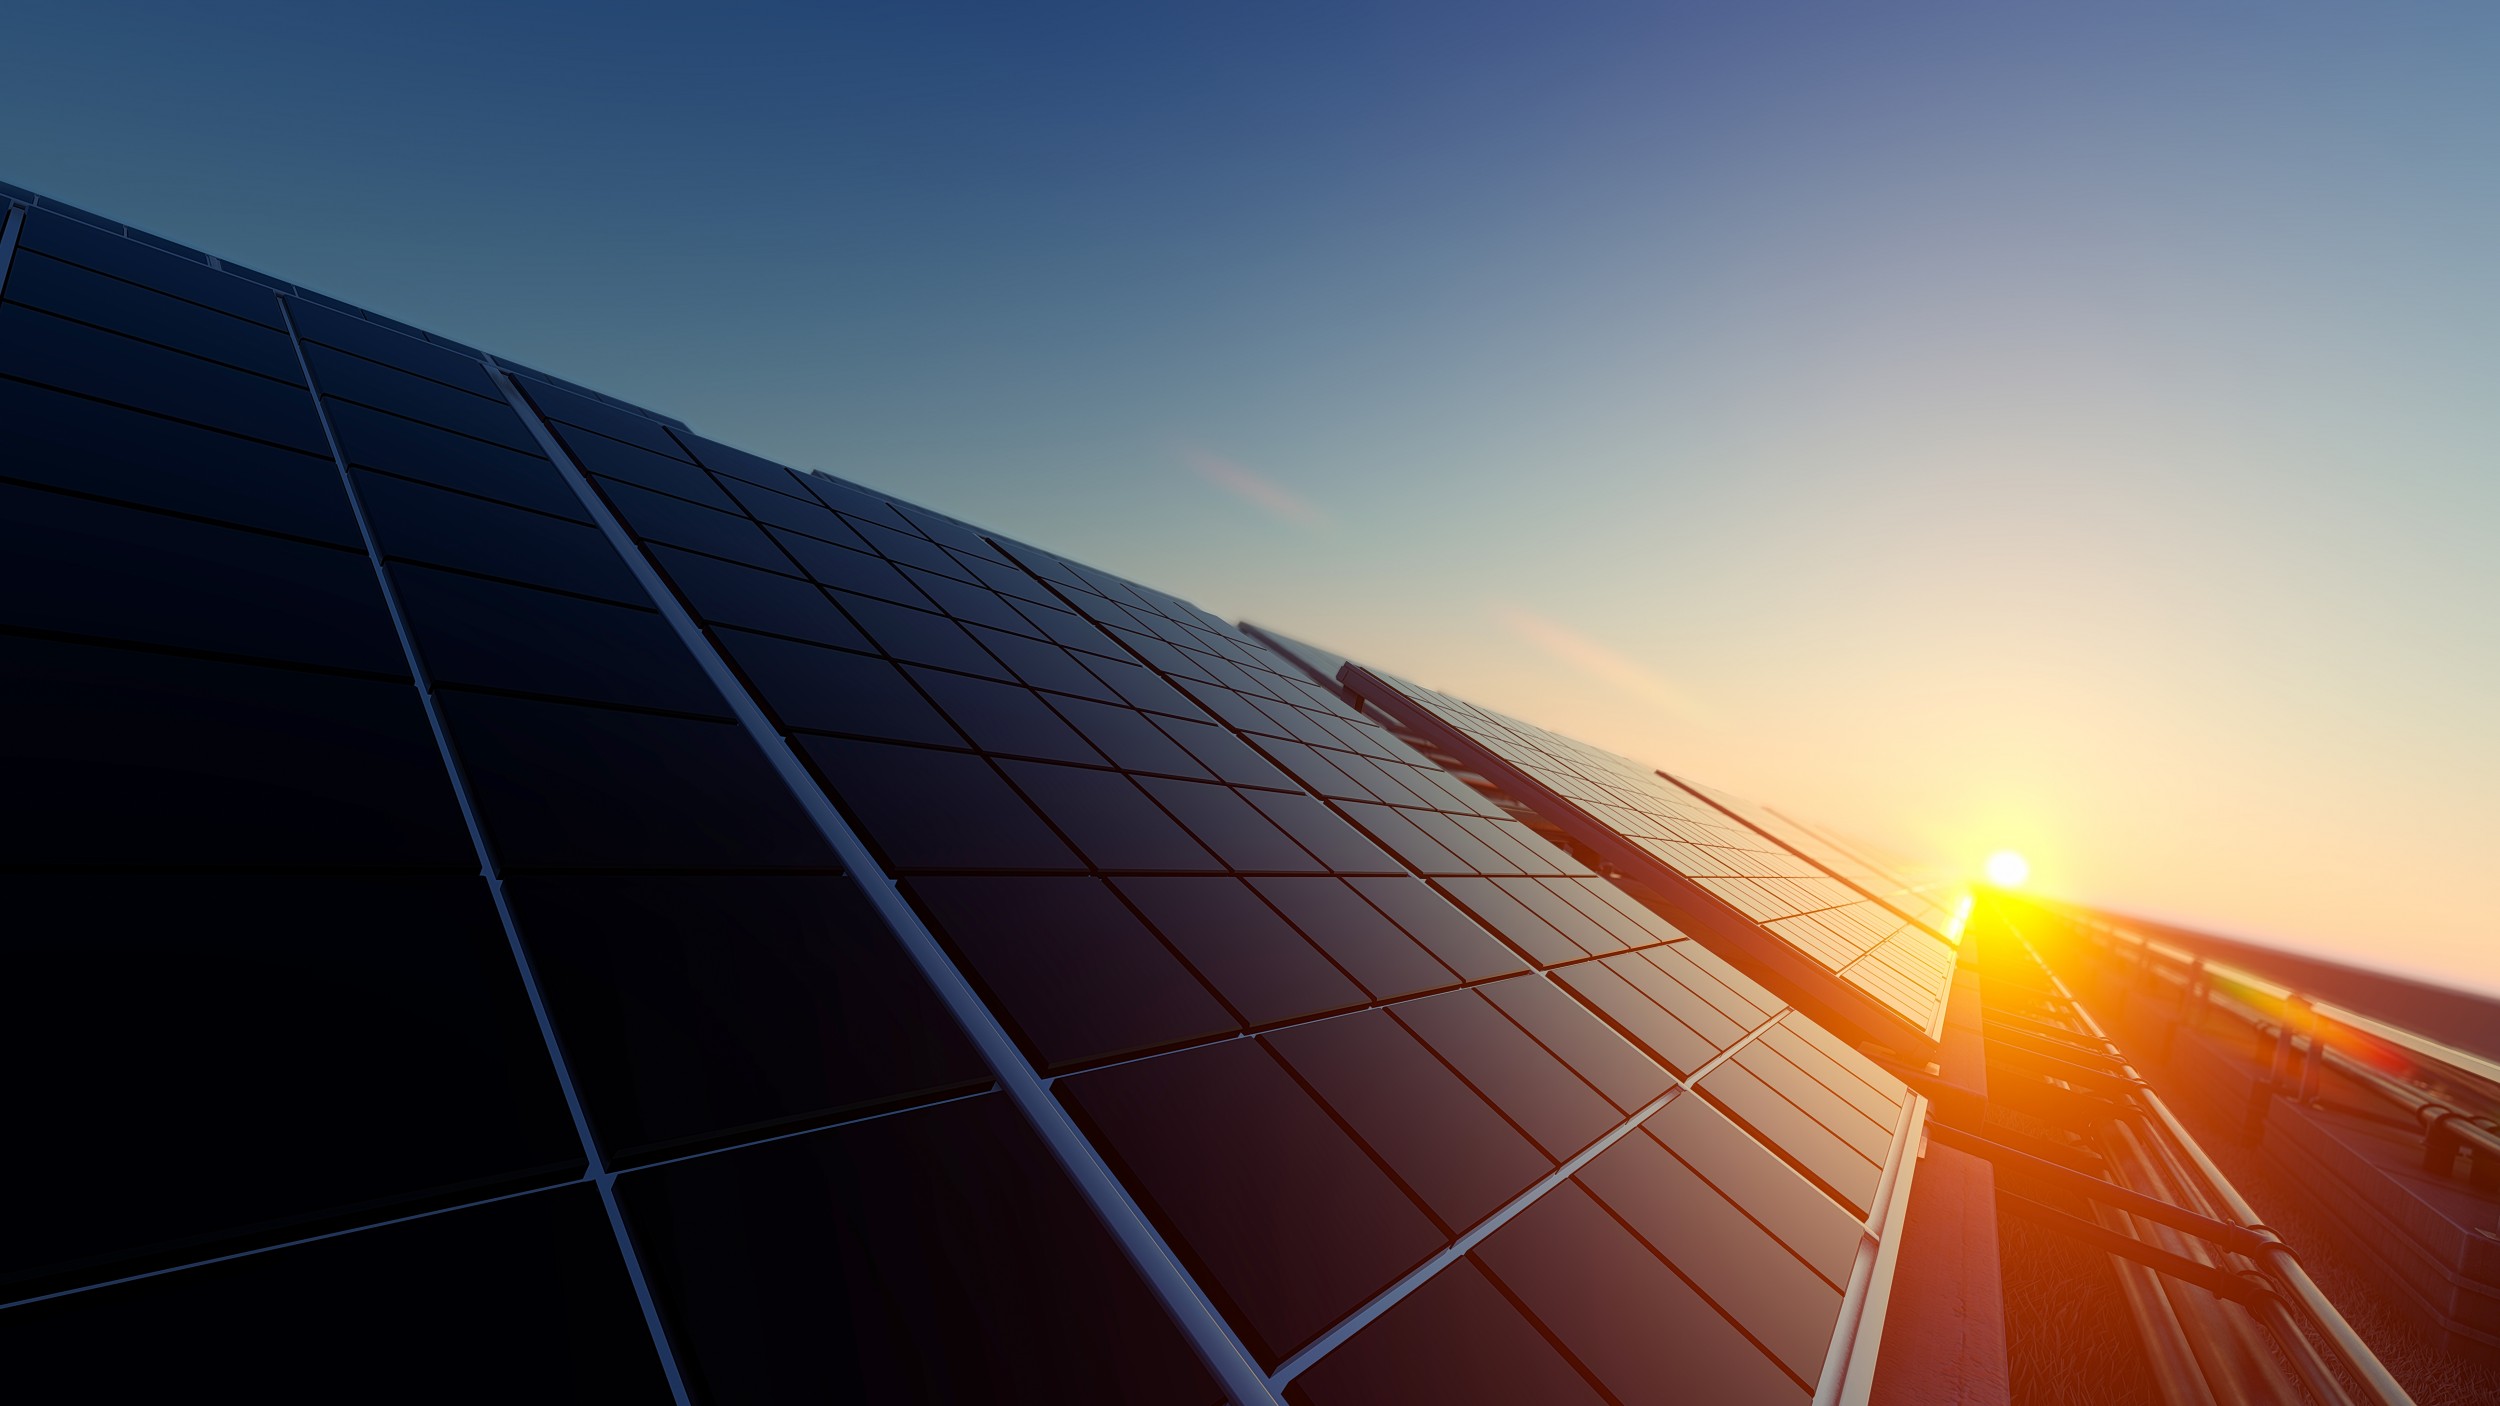 Photovoltaik-Anlagen könnten helfen, die Energiegewinnung zu dezentralisieren.